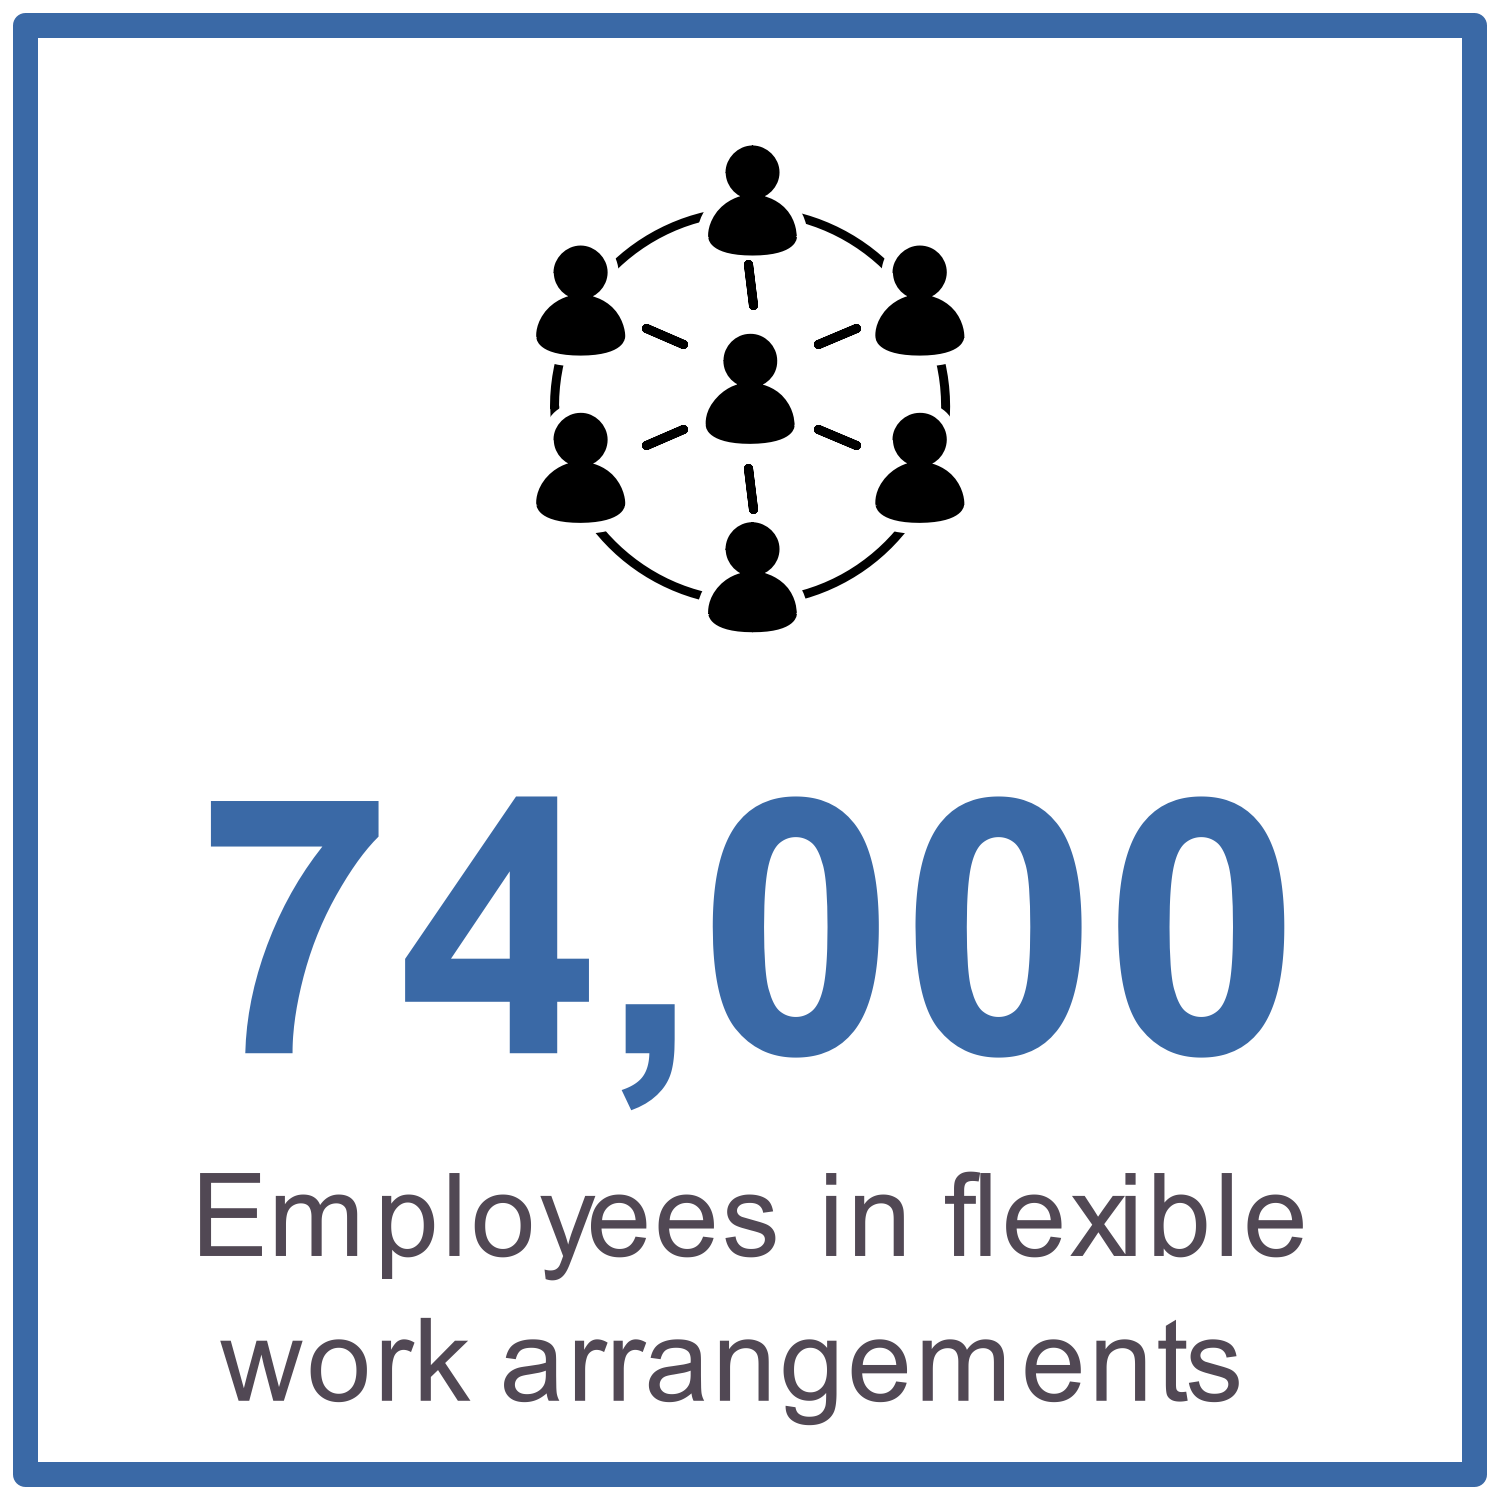 74,000 employees in flexible work arrangements